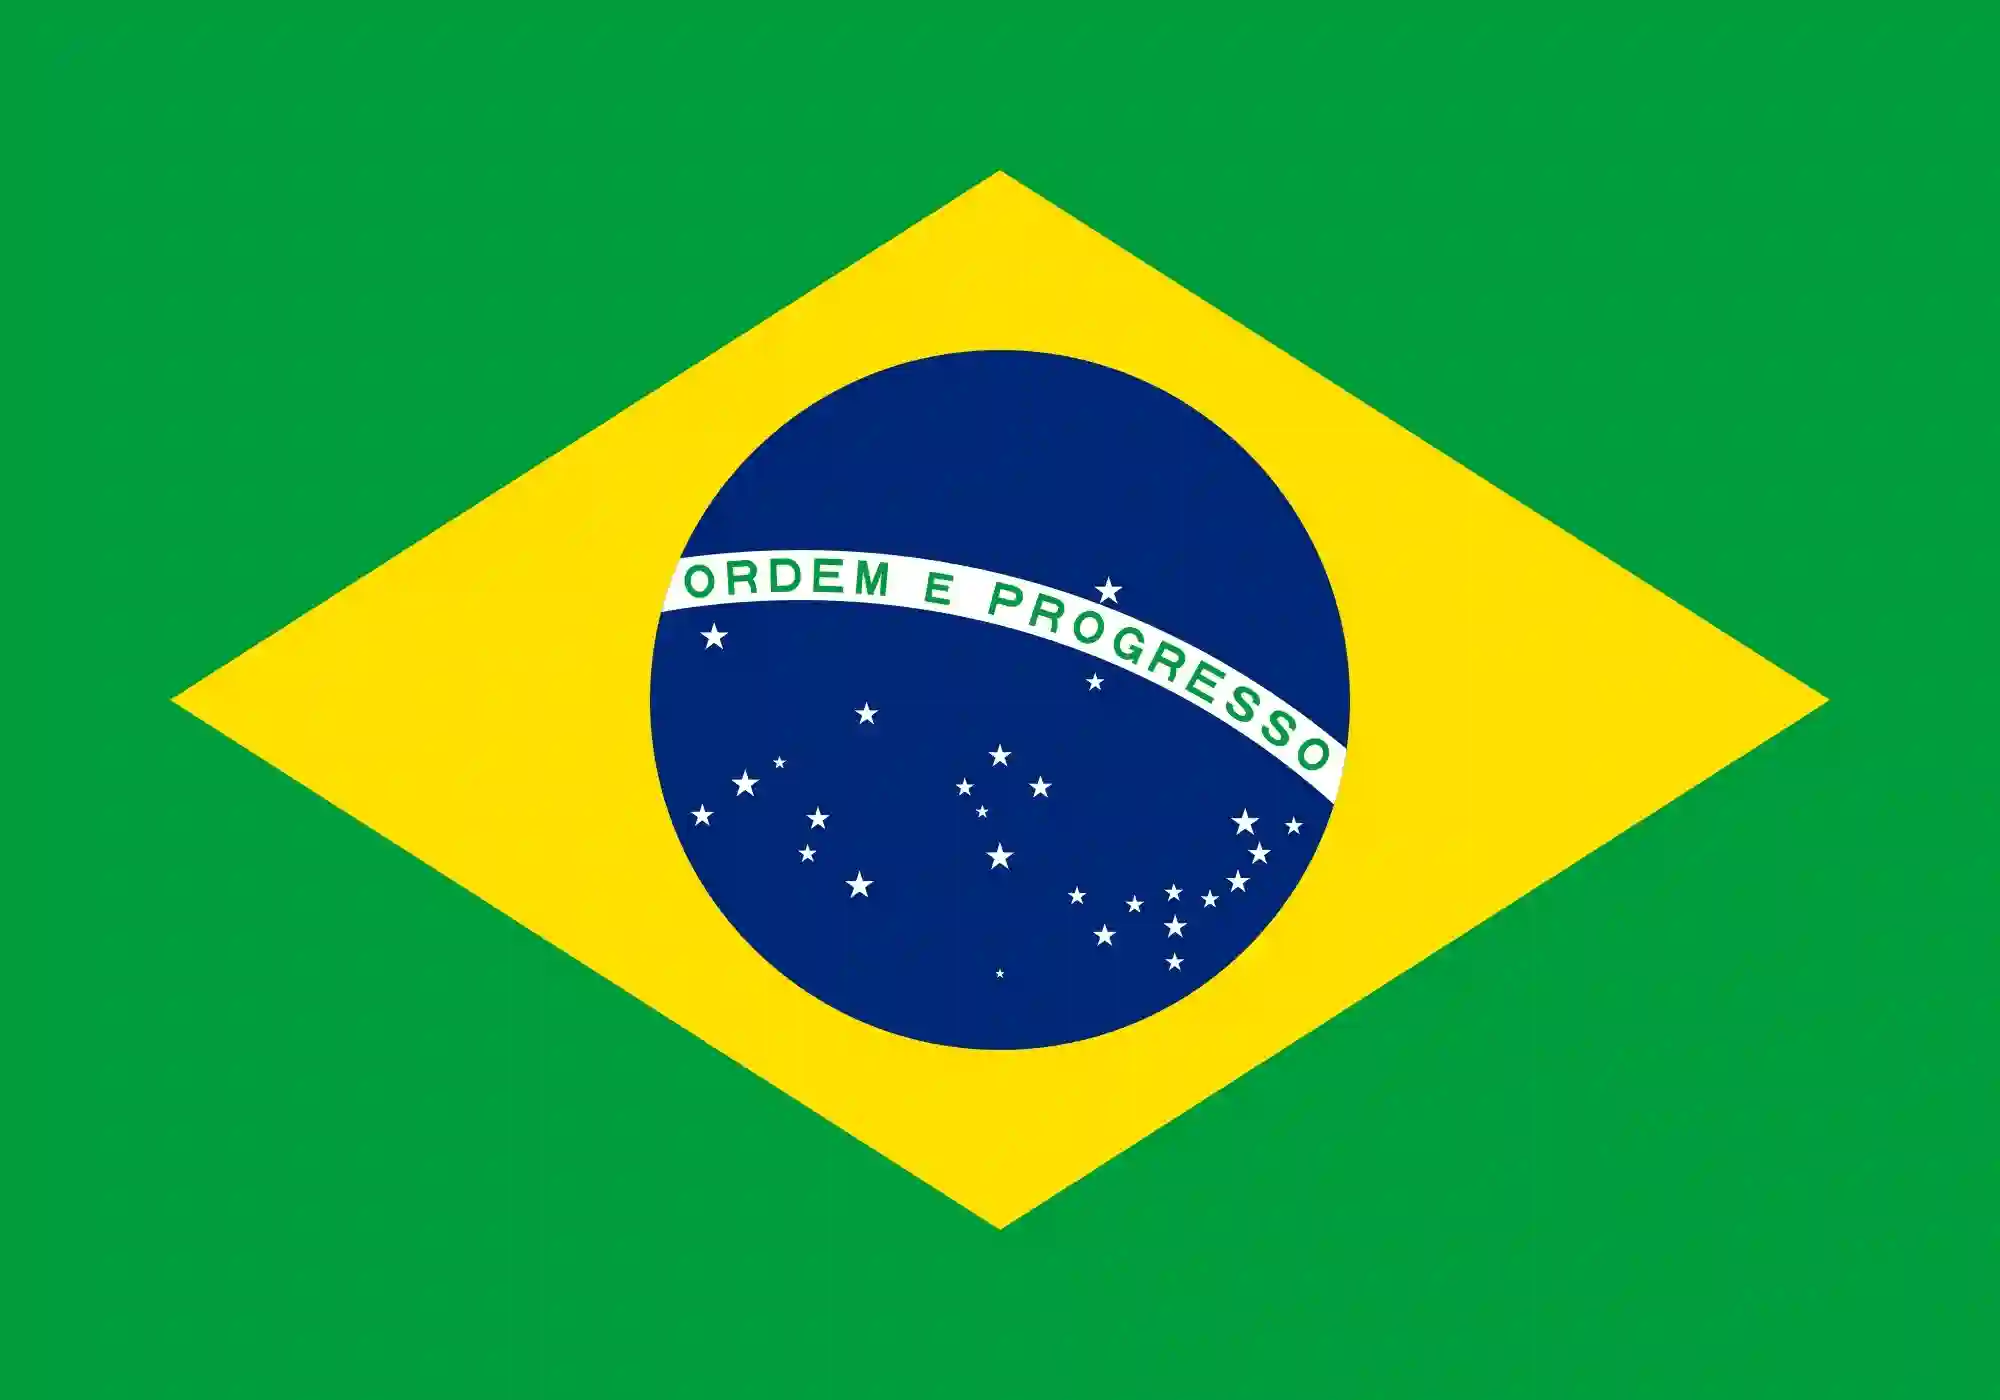 significados das cores da bandeira do Brasil